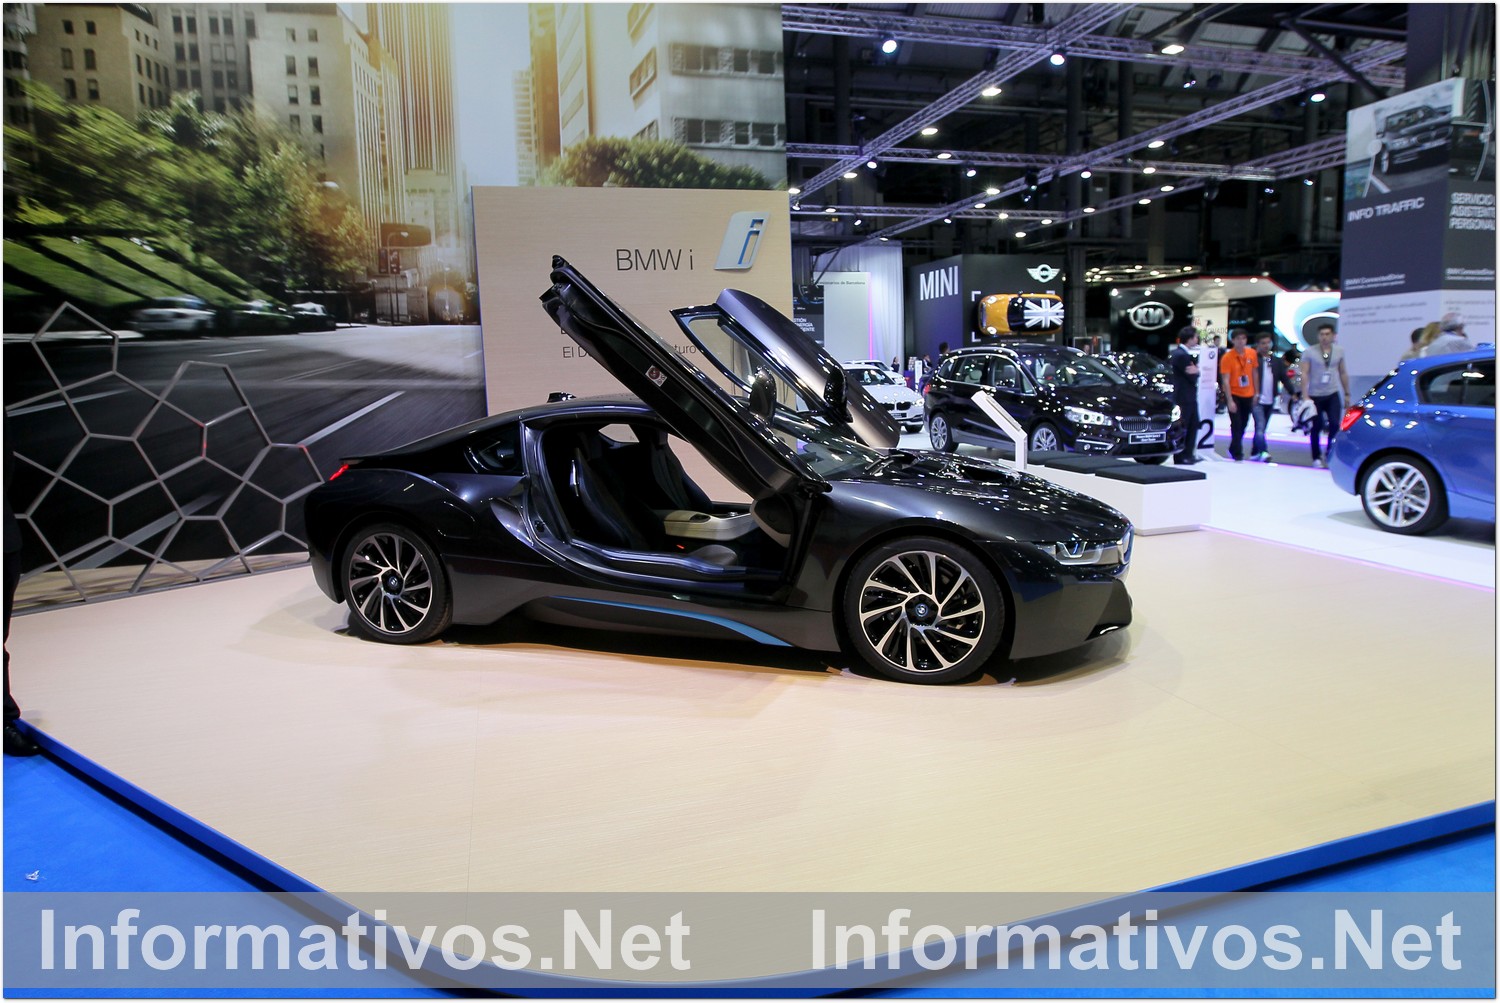 BCN8MAY015.- Inauguración del Salón del Automóvil de Barcelona. BMW i8 uno de los más buscados por los visitantes del salón.